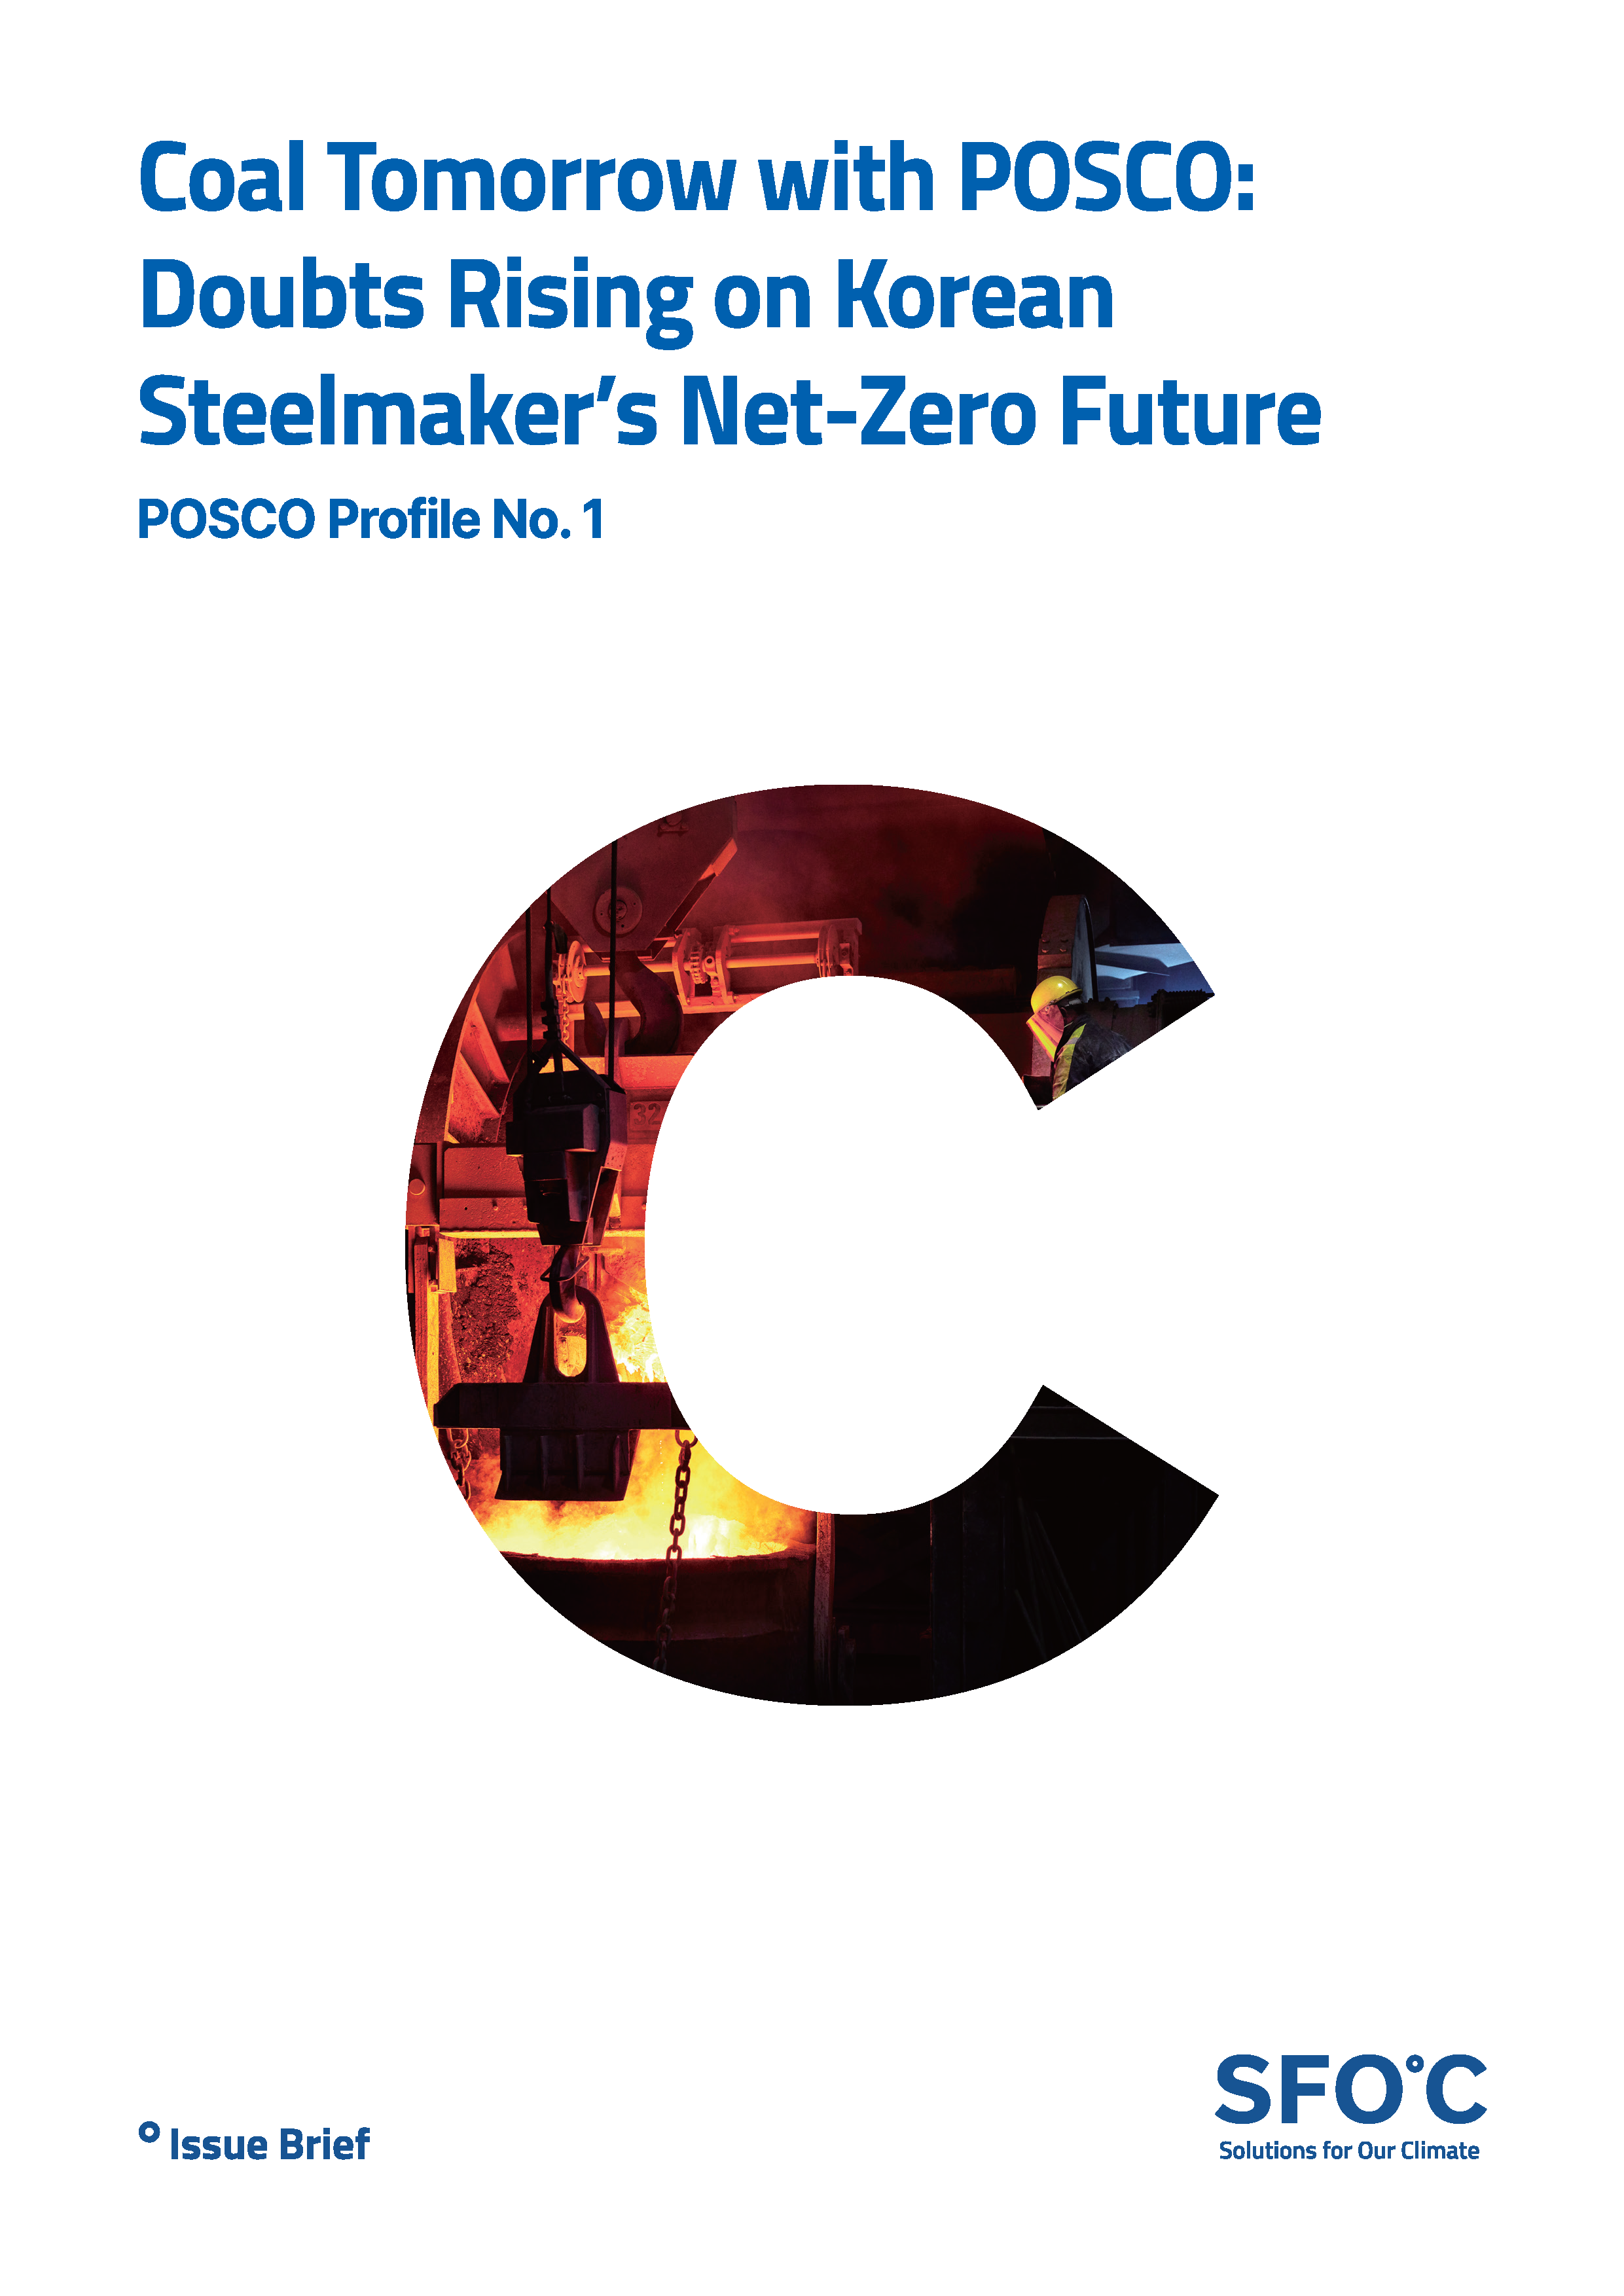 POSCO Profile No. 1 - Coal Tomorrow with POSCO: Doubts Rising on Korean Steelmaker’s Net-Zero Future